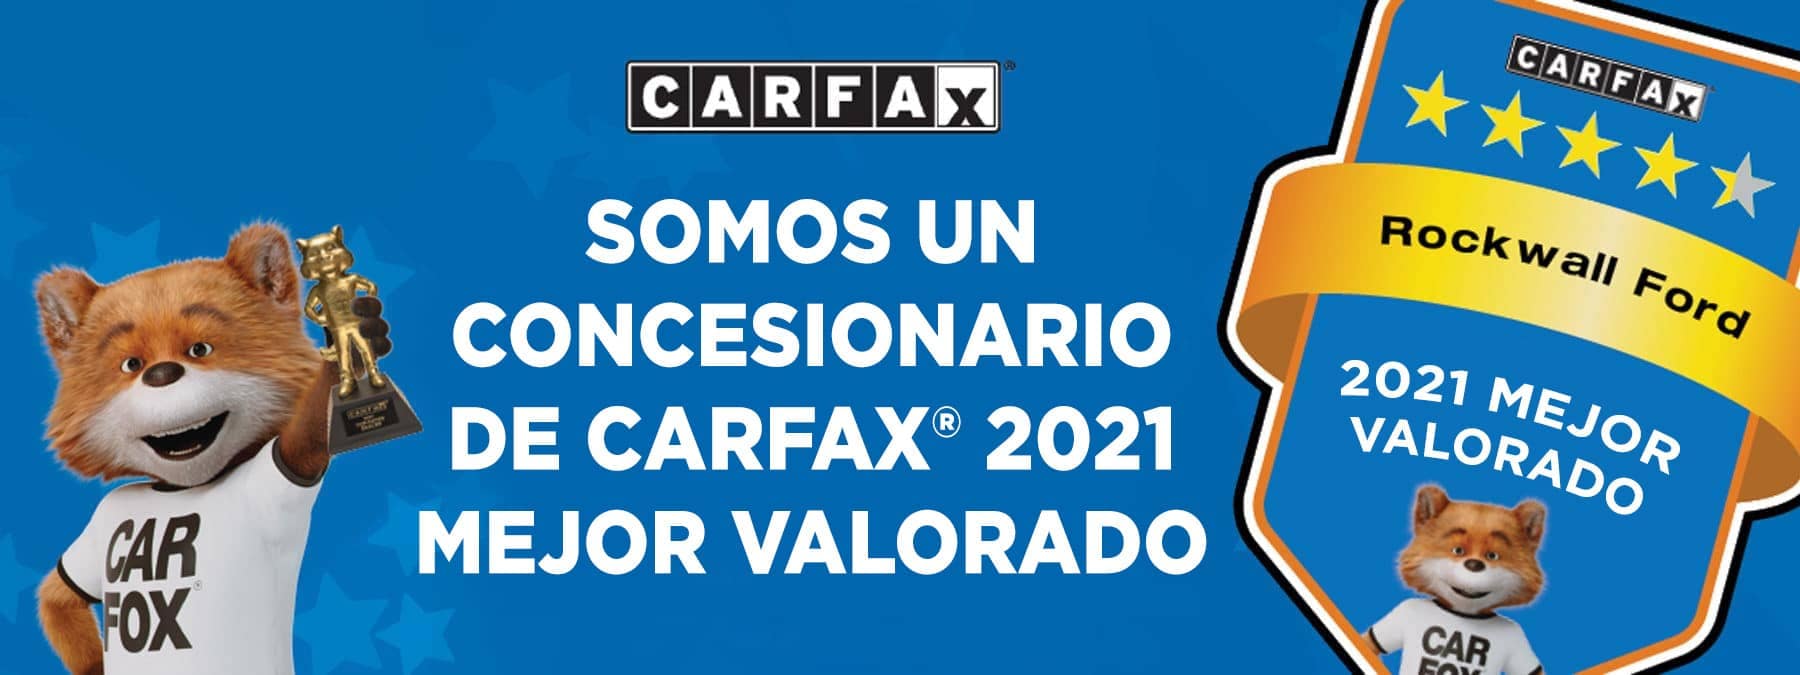 Rockwall Ford CarFax en Espanol